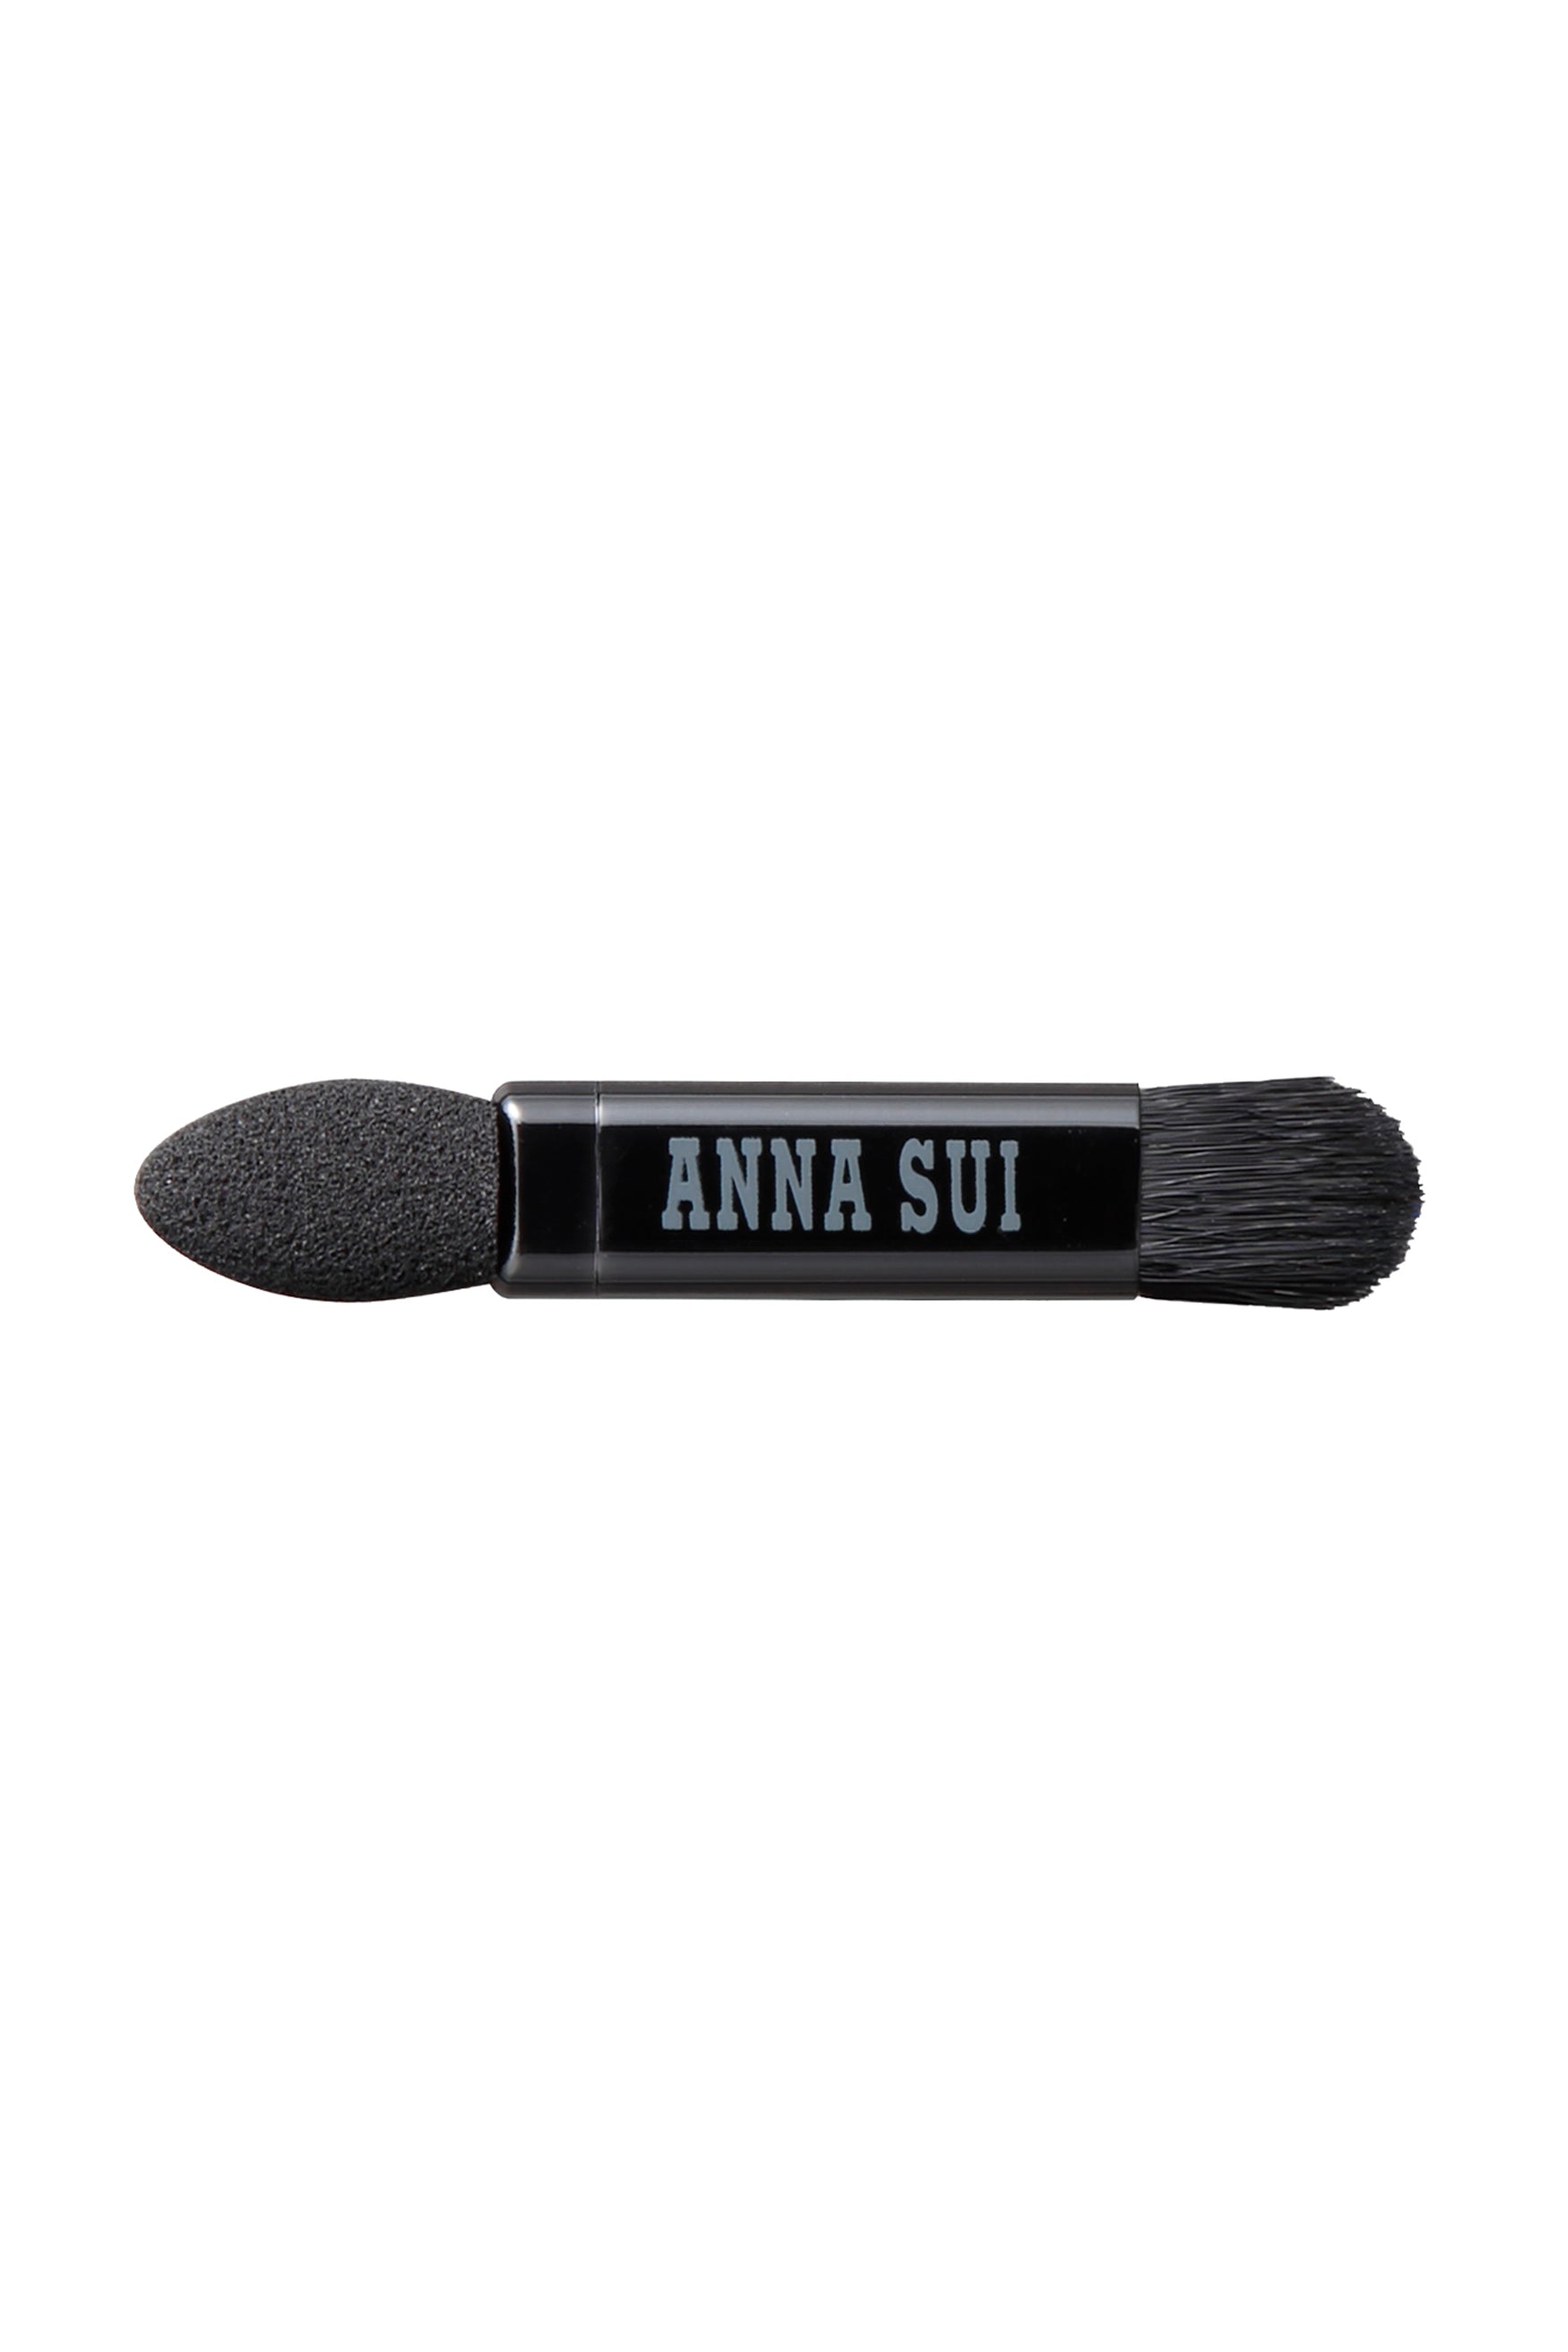 L'applicatore, una testa dura da un lato, una Bruch dall'altro, l'etichetta Anna Sui al centro.